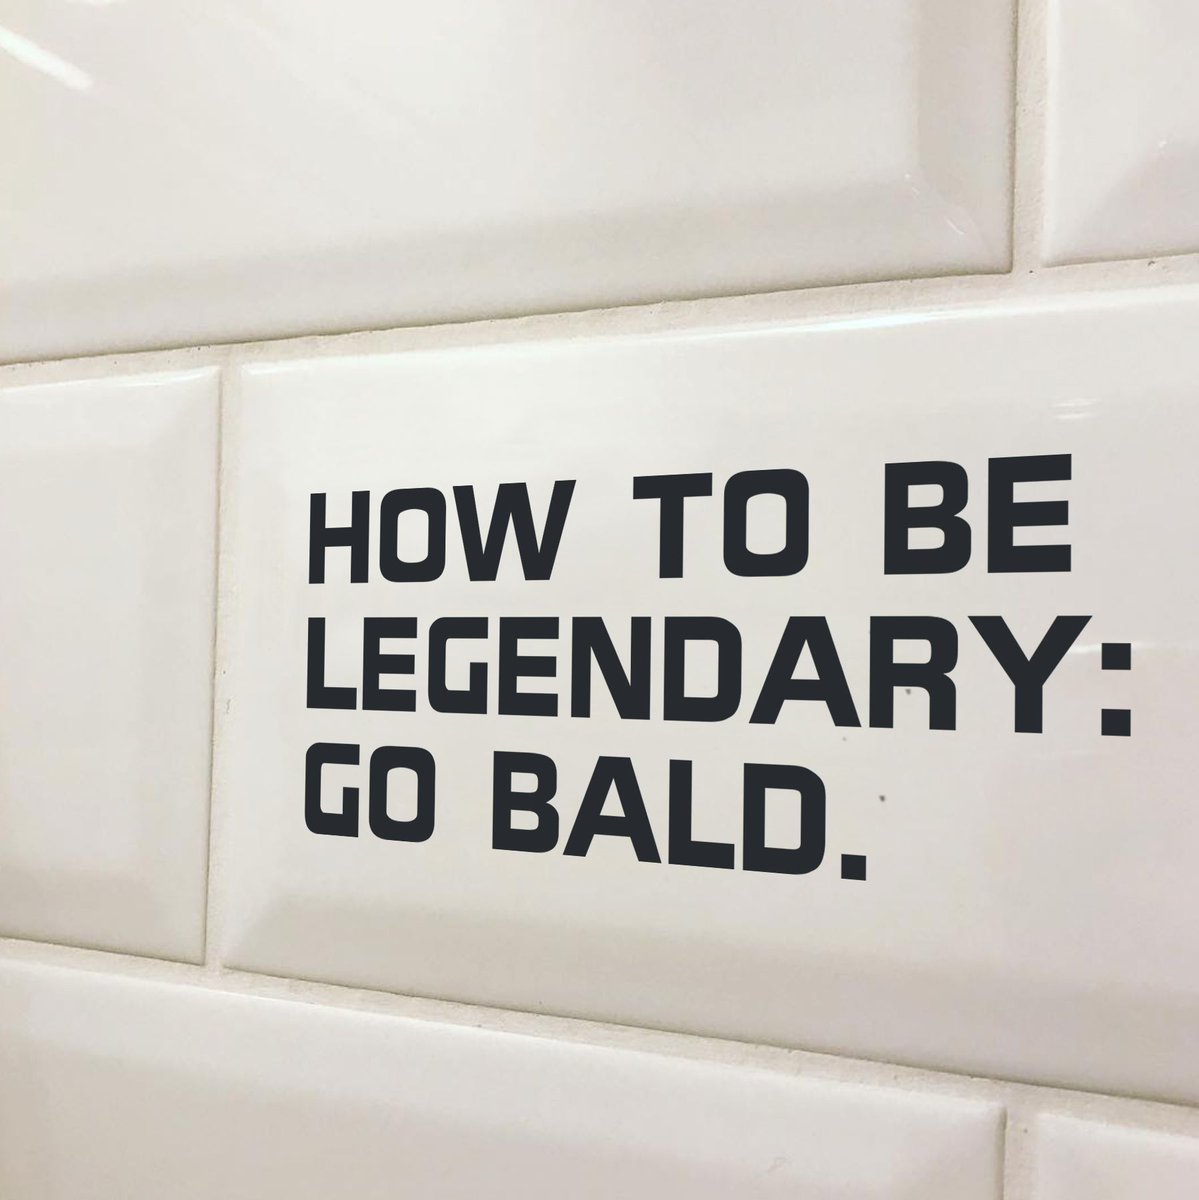 Go bald!🙌  

#BaldAndProud #BaldByChoice #BaldAndBeautiful #BaldAndConfident #EmbraceTheBald #RockTheBald